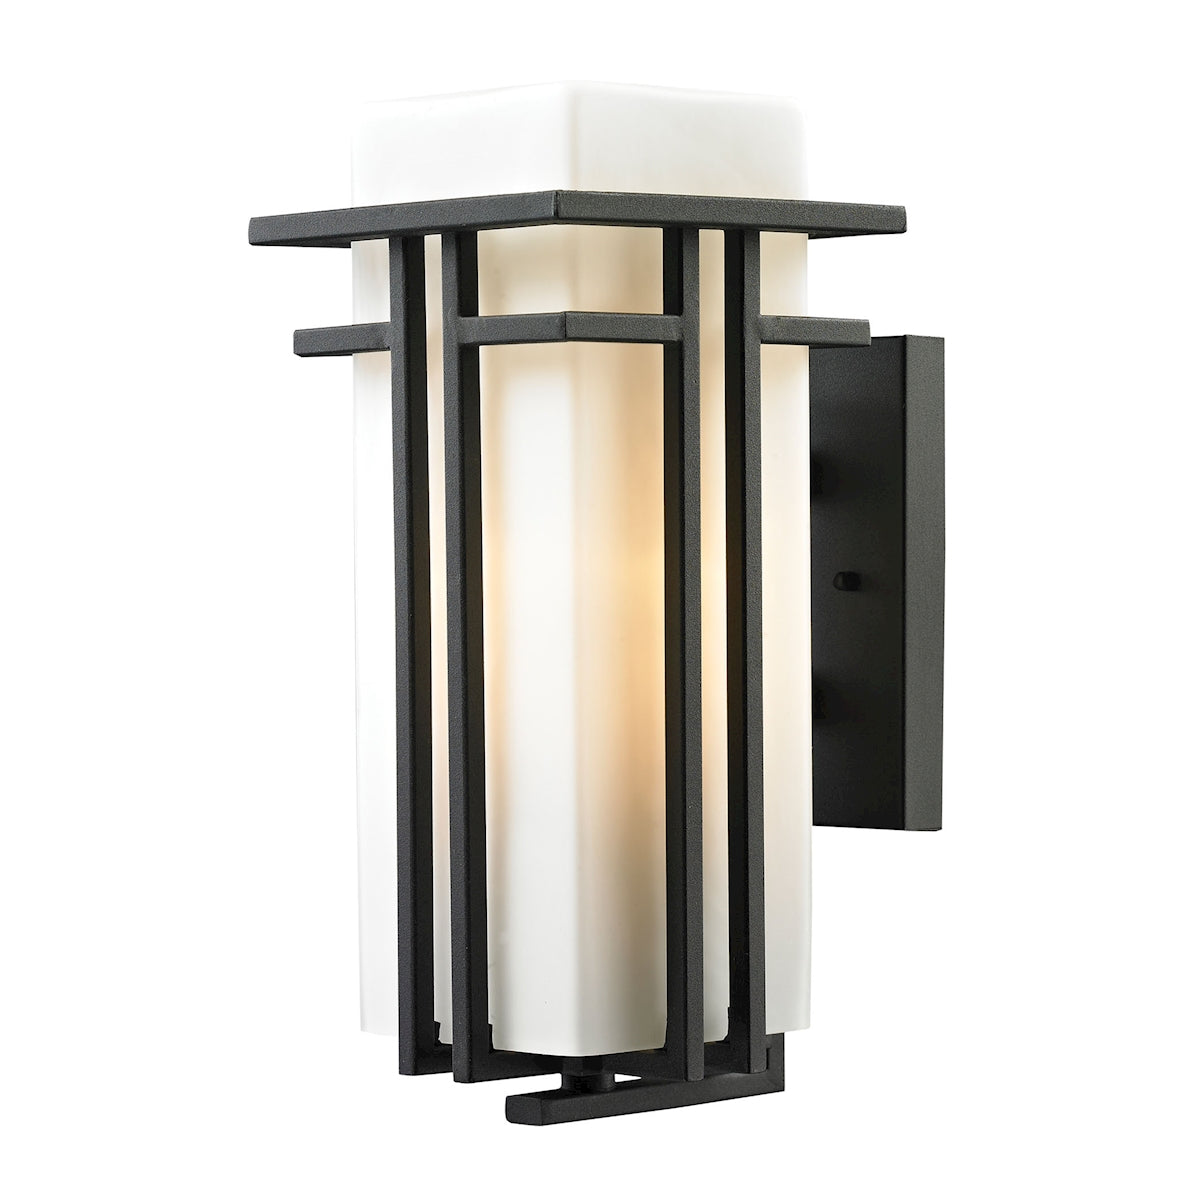 ELK Lighting 45086/1 Croftwell 1-Light Outdoor Wall Lamp in Textured Matte Black